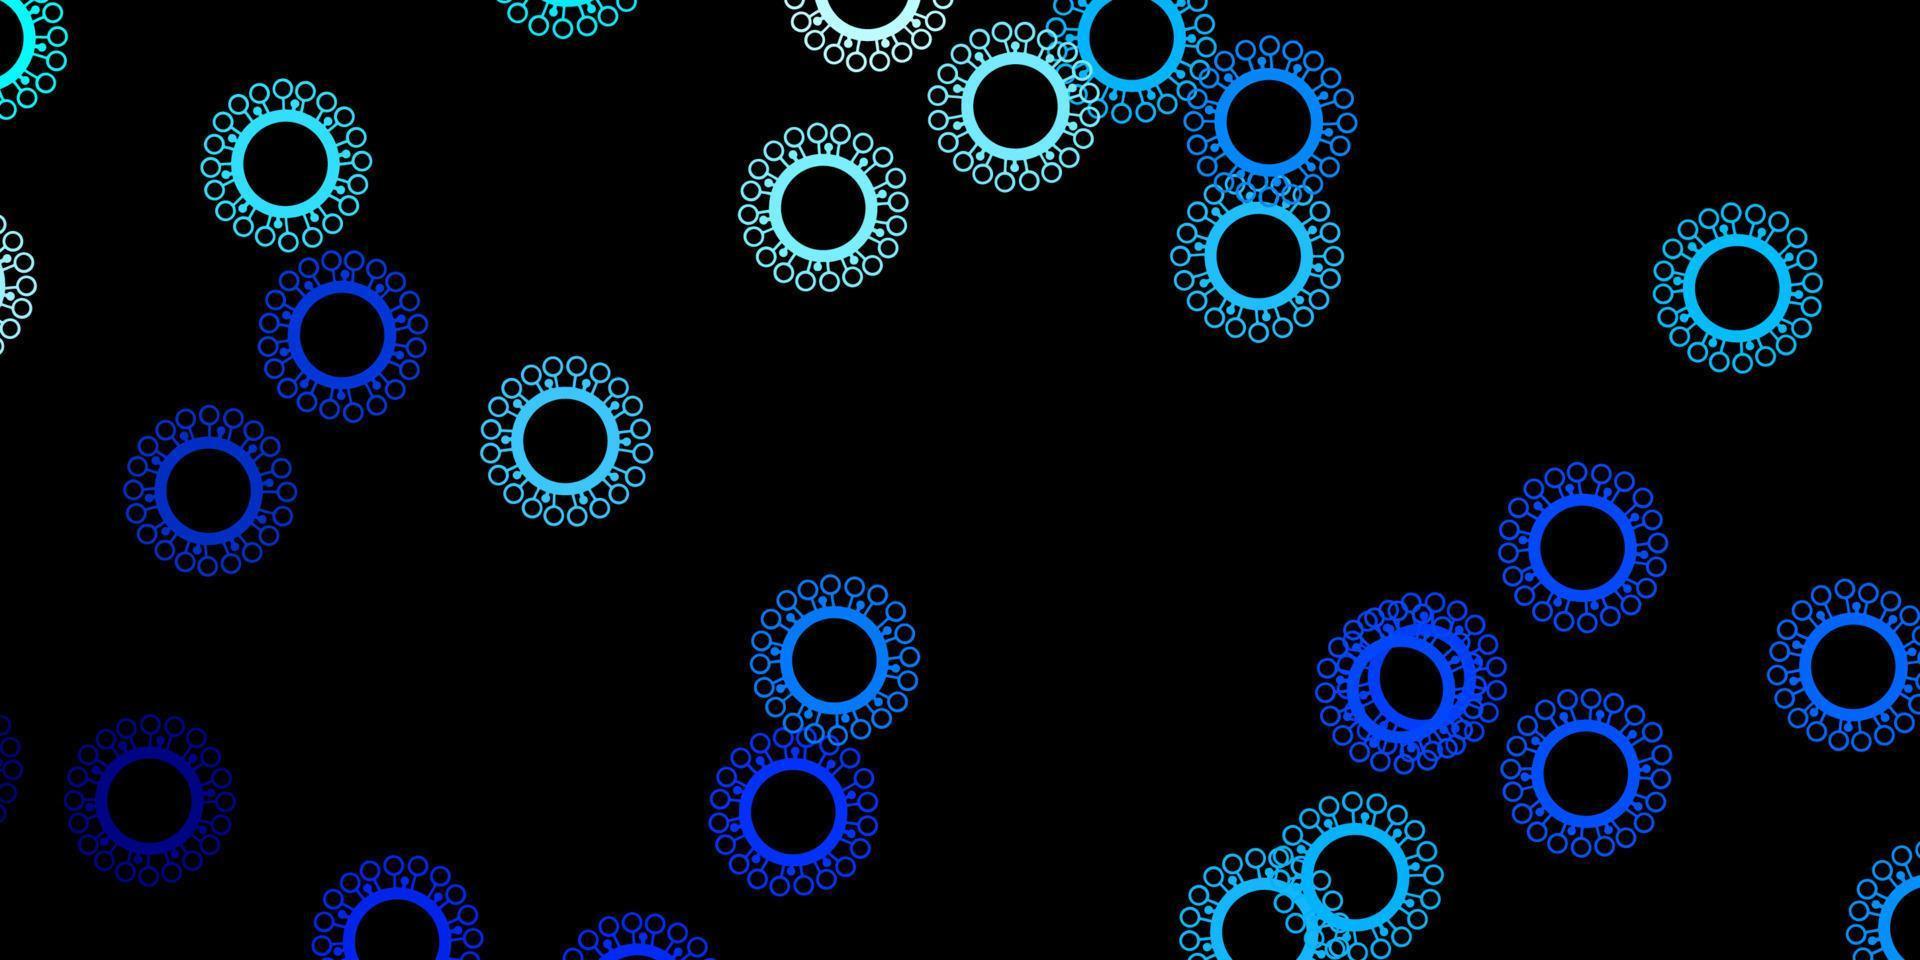 trama vettoriale blu scuro con simboli di malattia.